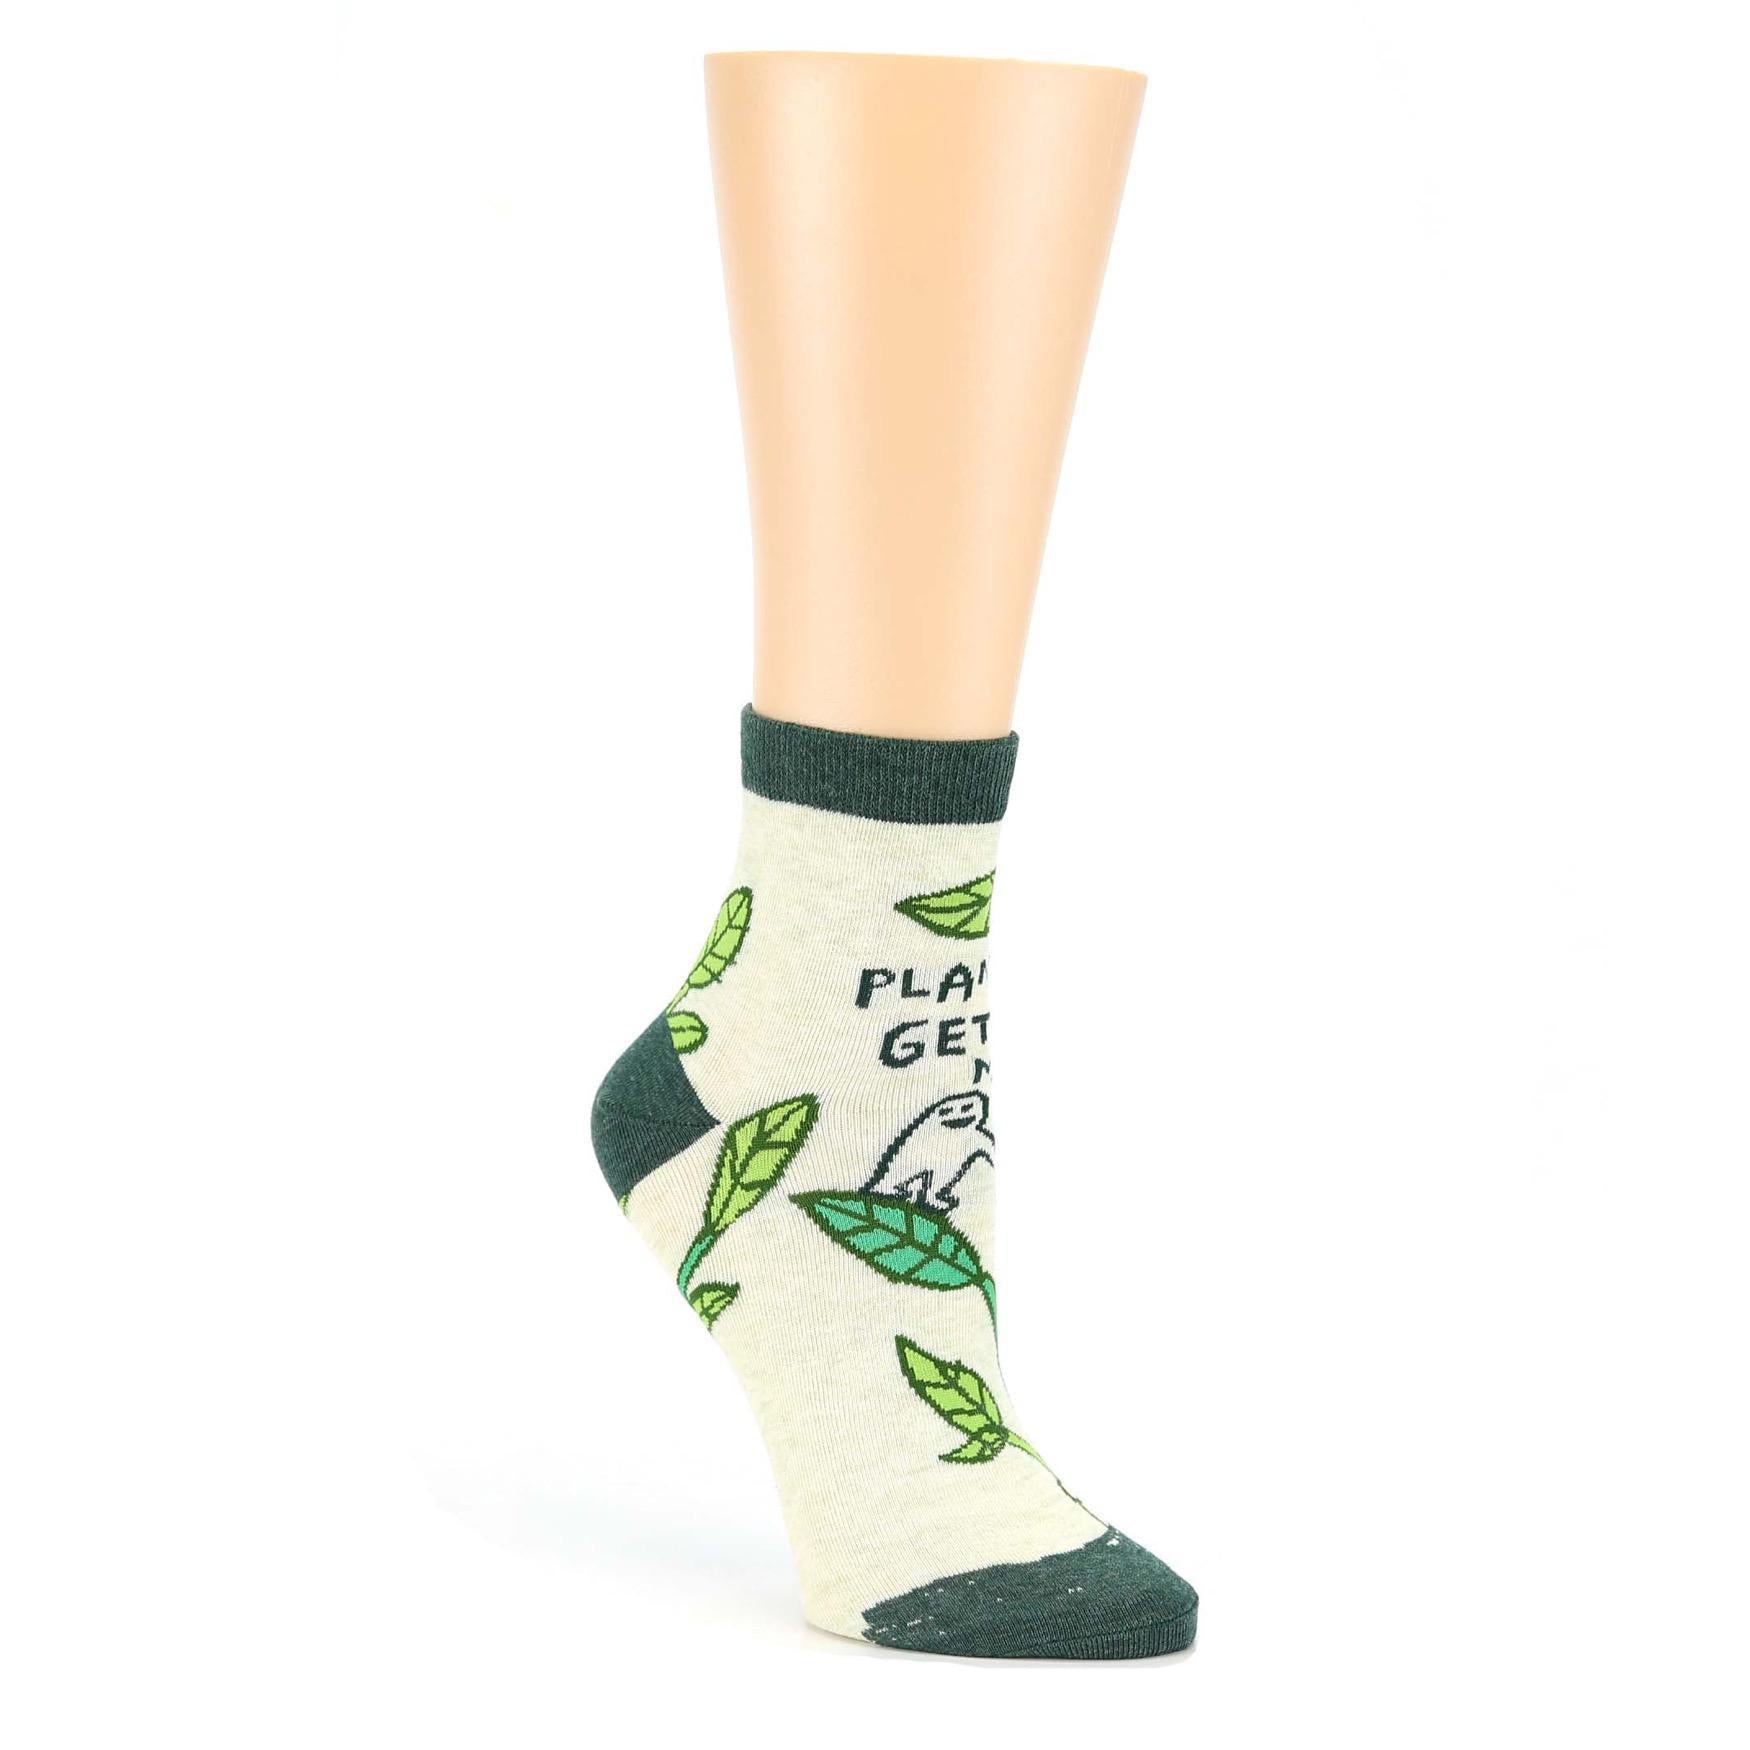 "Plants Get Me" - Ankle Socks